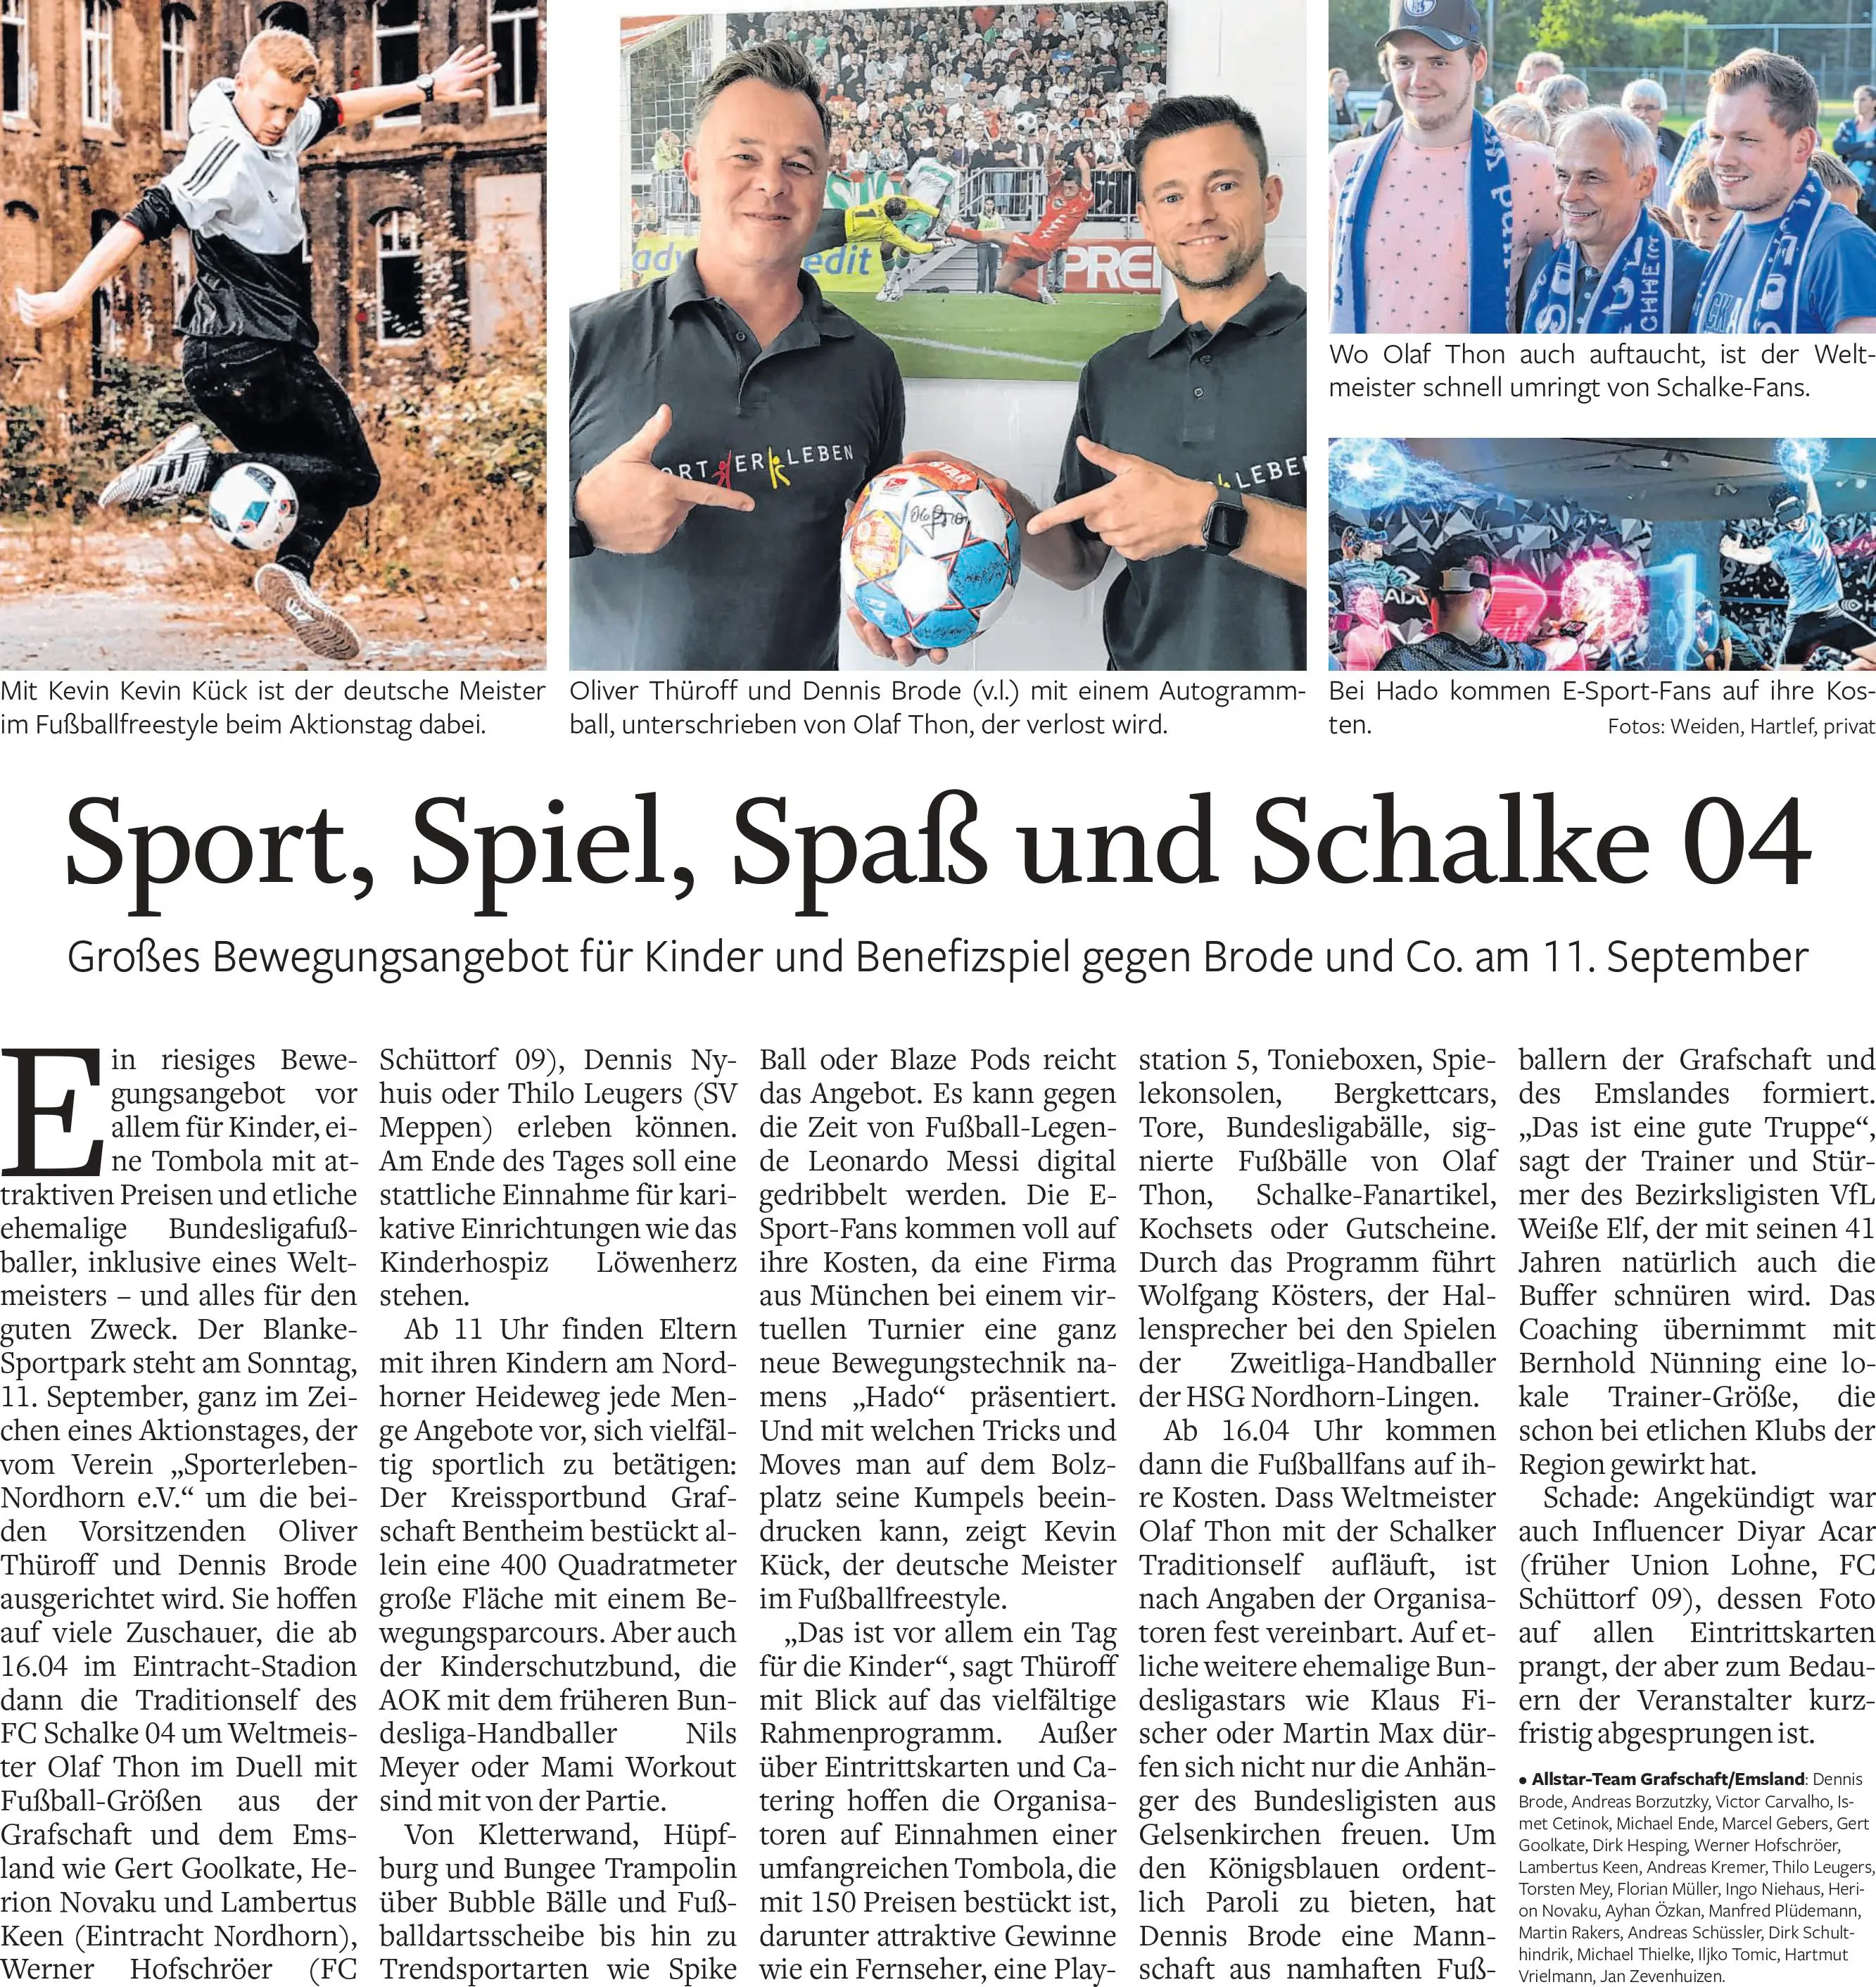 Sport, Spiel, Spaß und Schalke 04